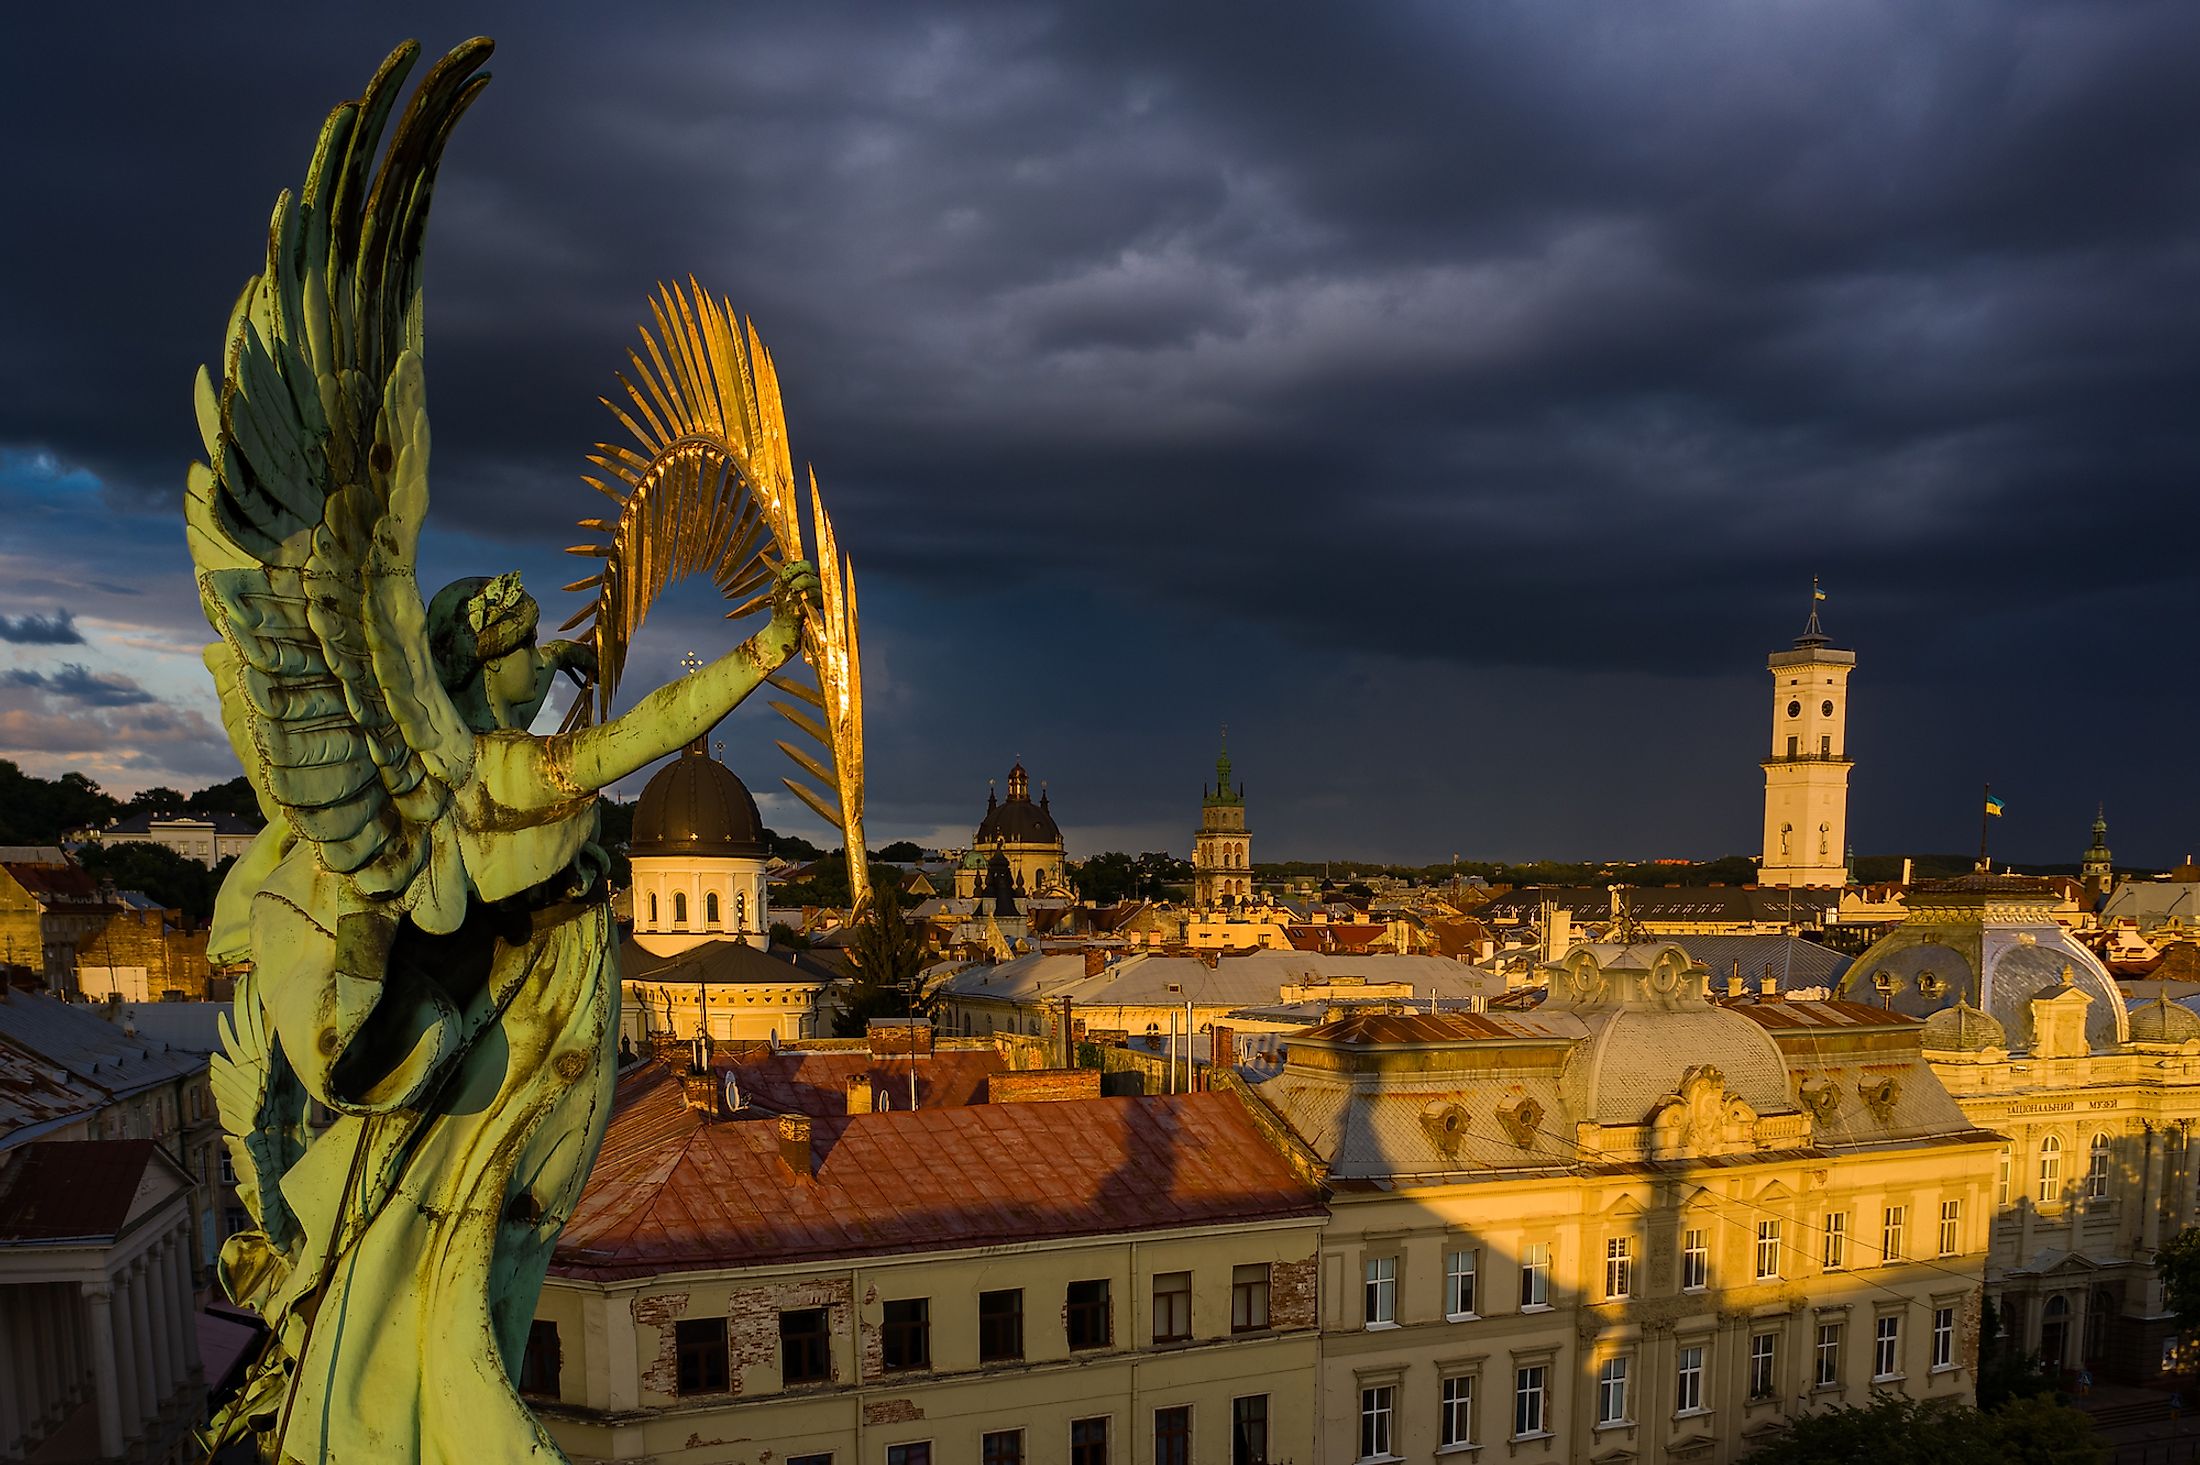 Lviv, Ukarine. Editorial credit: Ruslan Lytvyn / Shutterstock.com